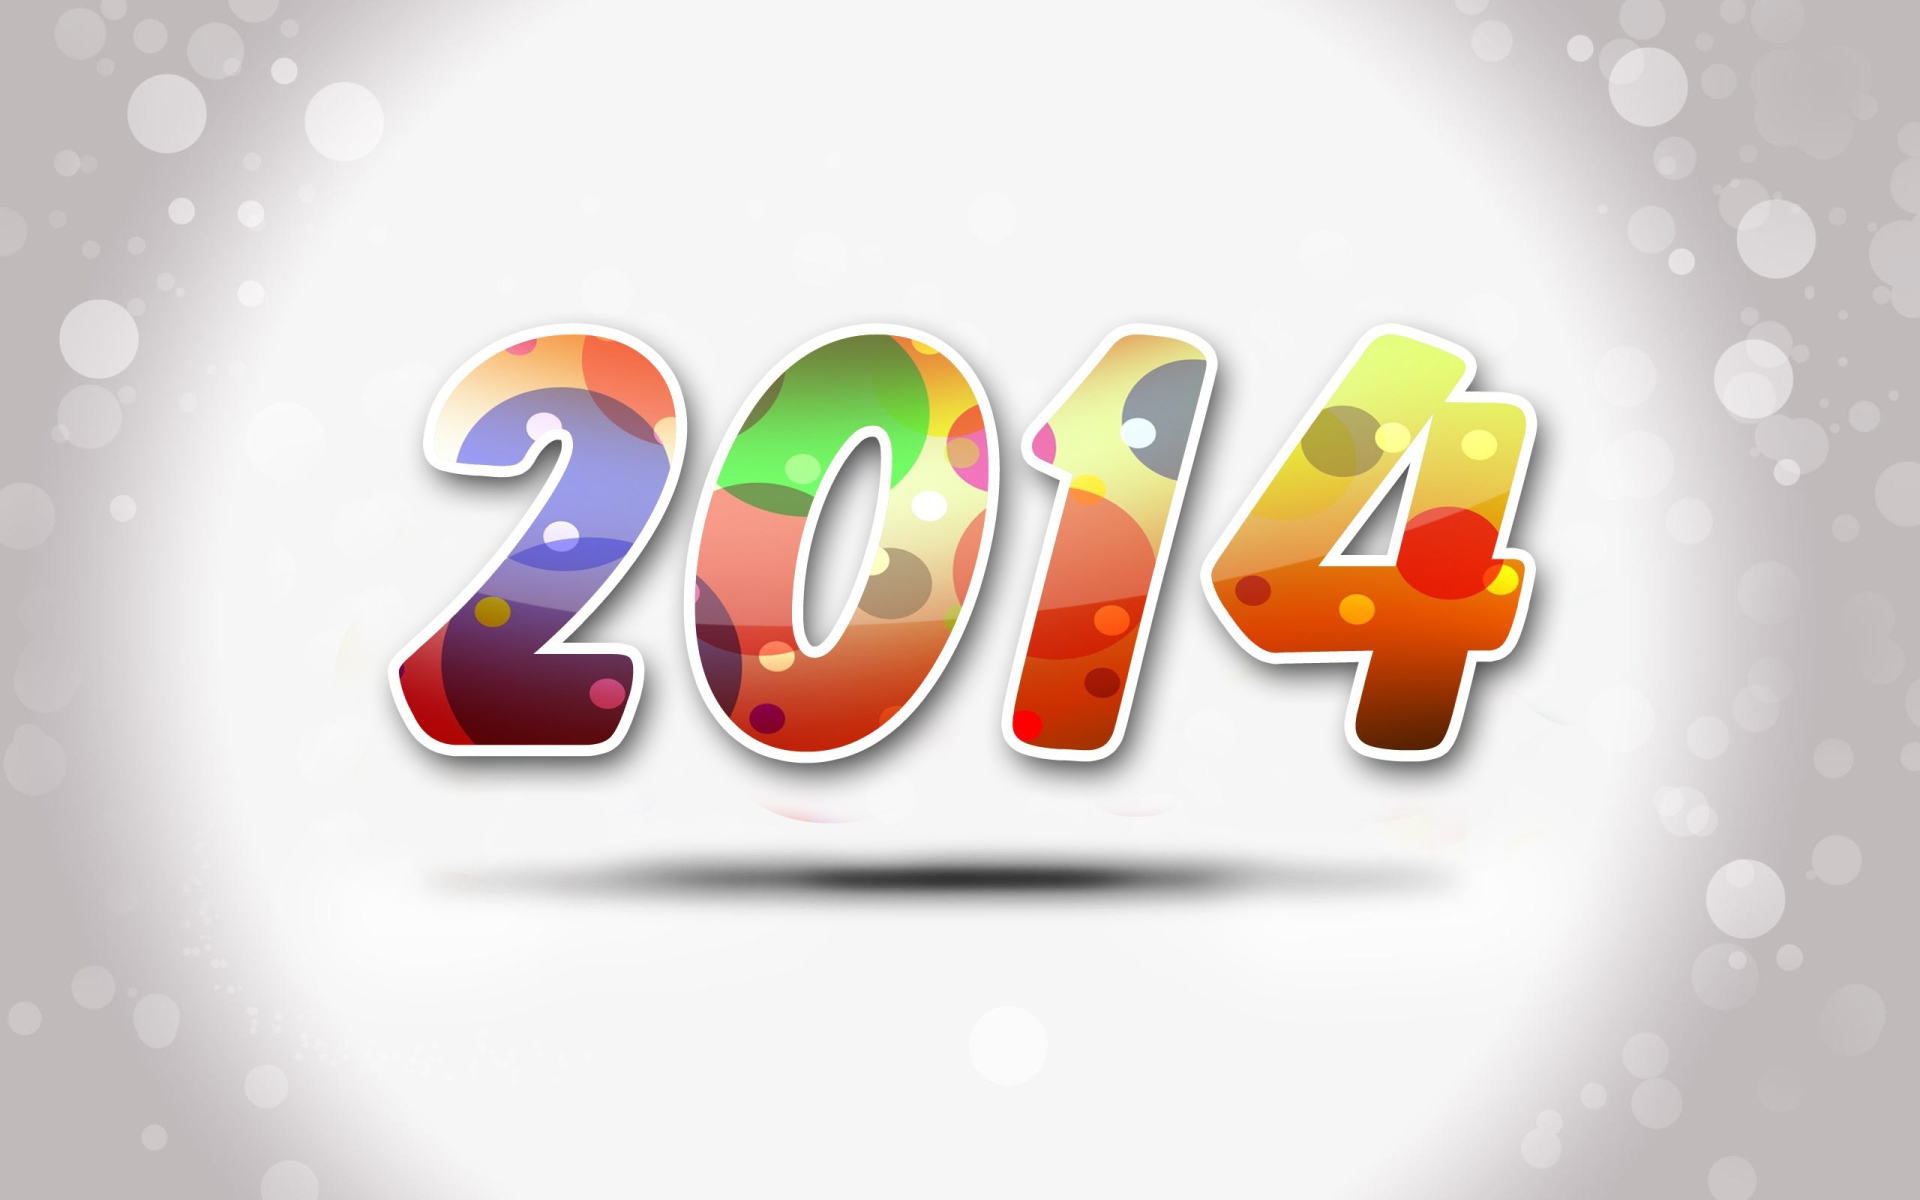 Новый год 2014, красивая картинка